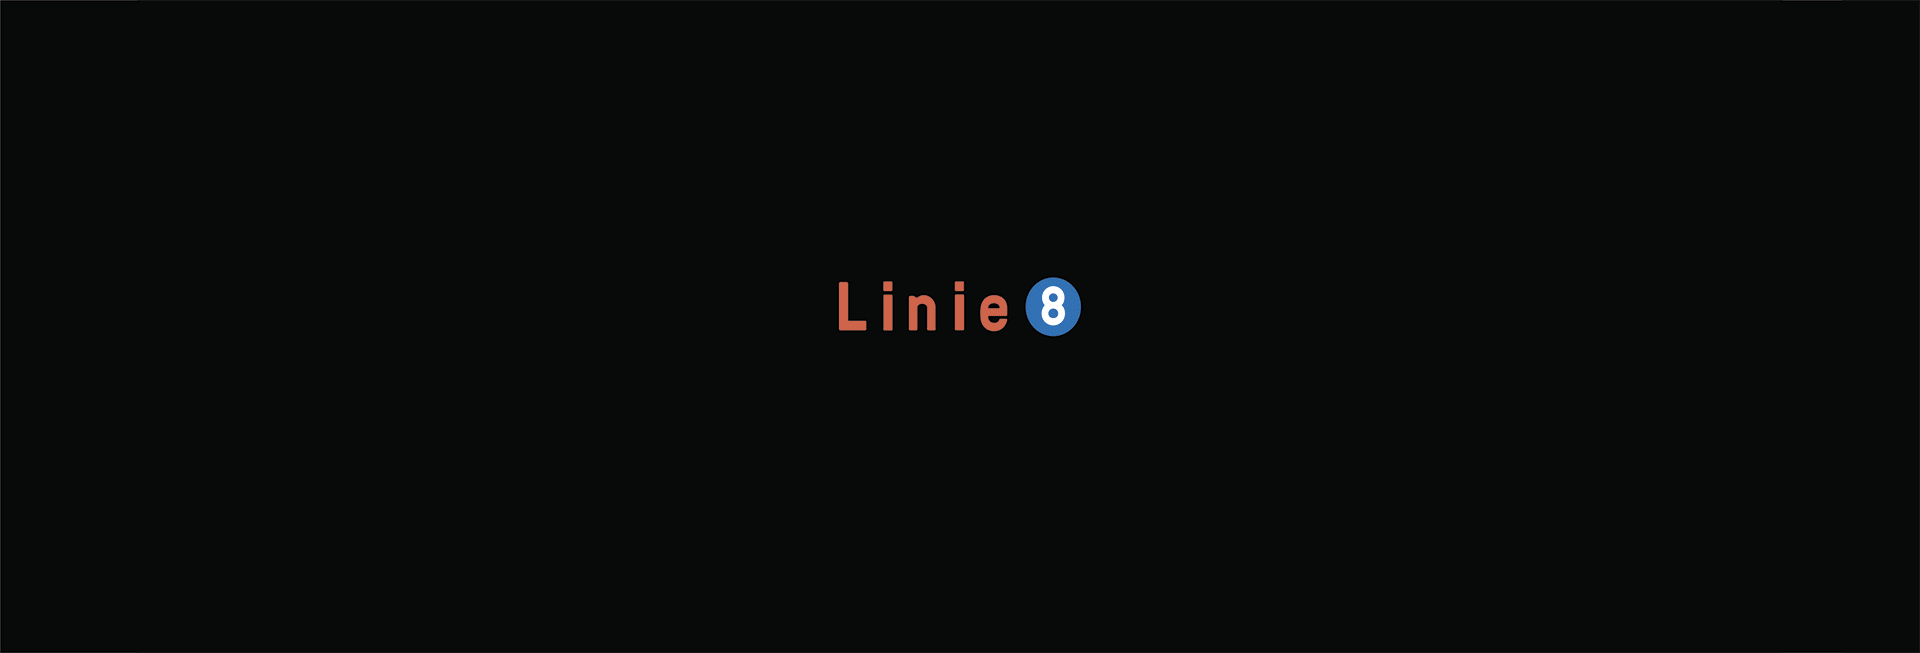 Animation_Linie8-kleiner